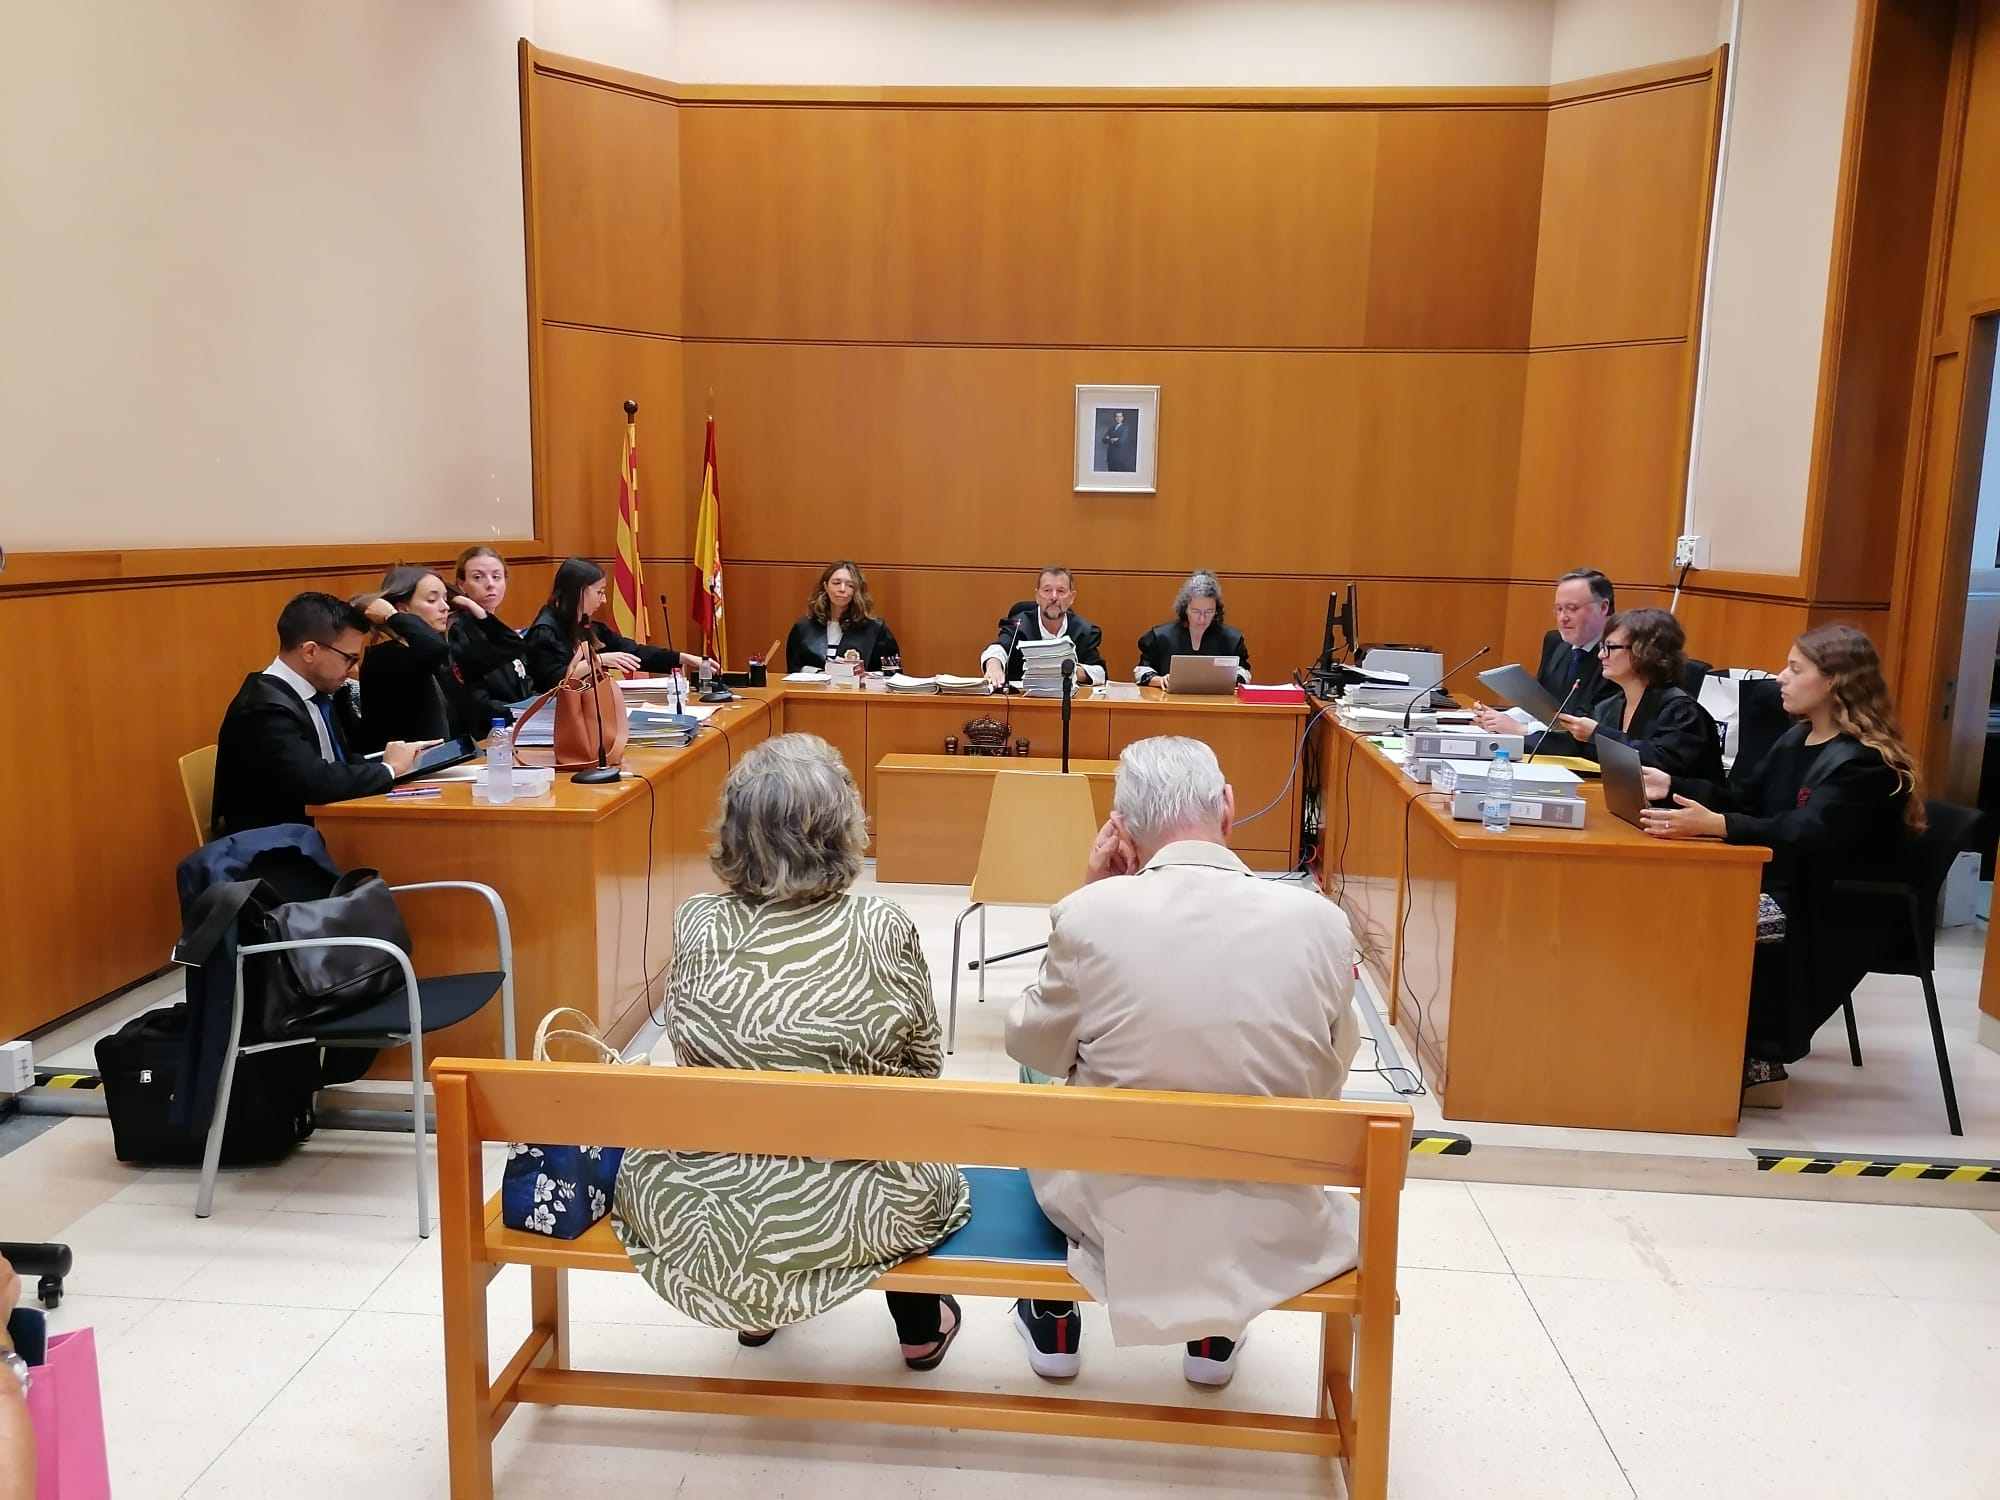 El fiscal demana 2 anys de presó a Jordi Montull i la seva dona per amagar diners al Palau: la parella ho nega